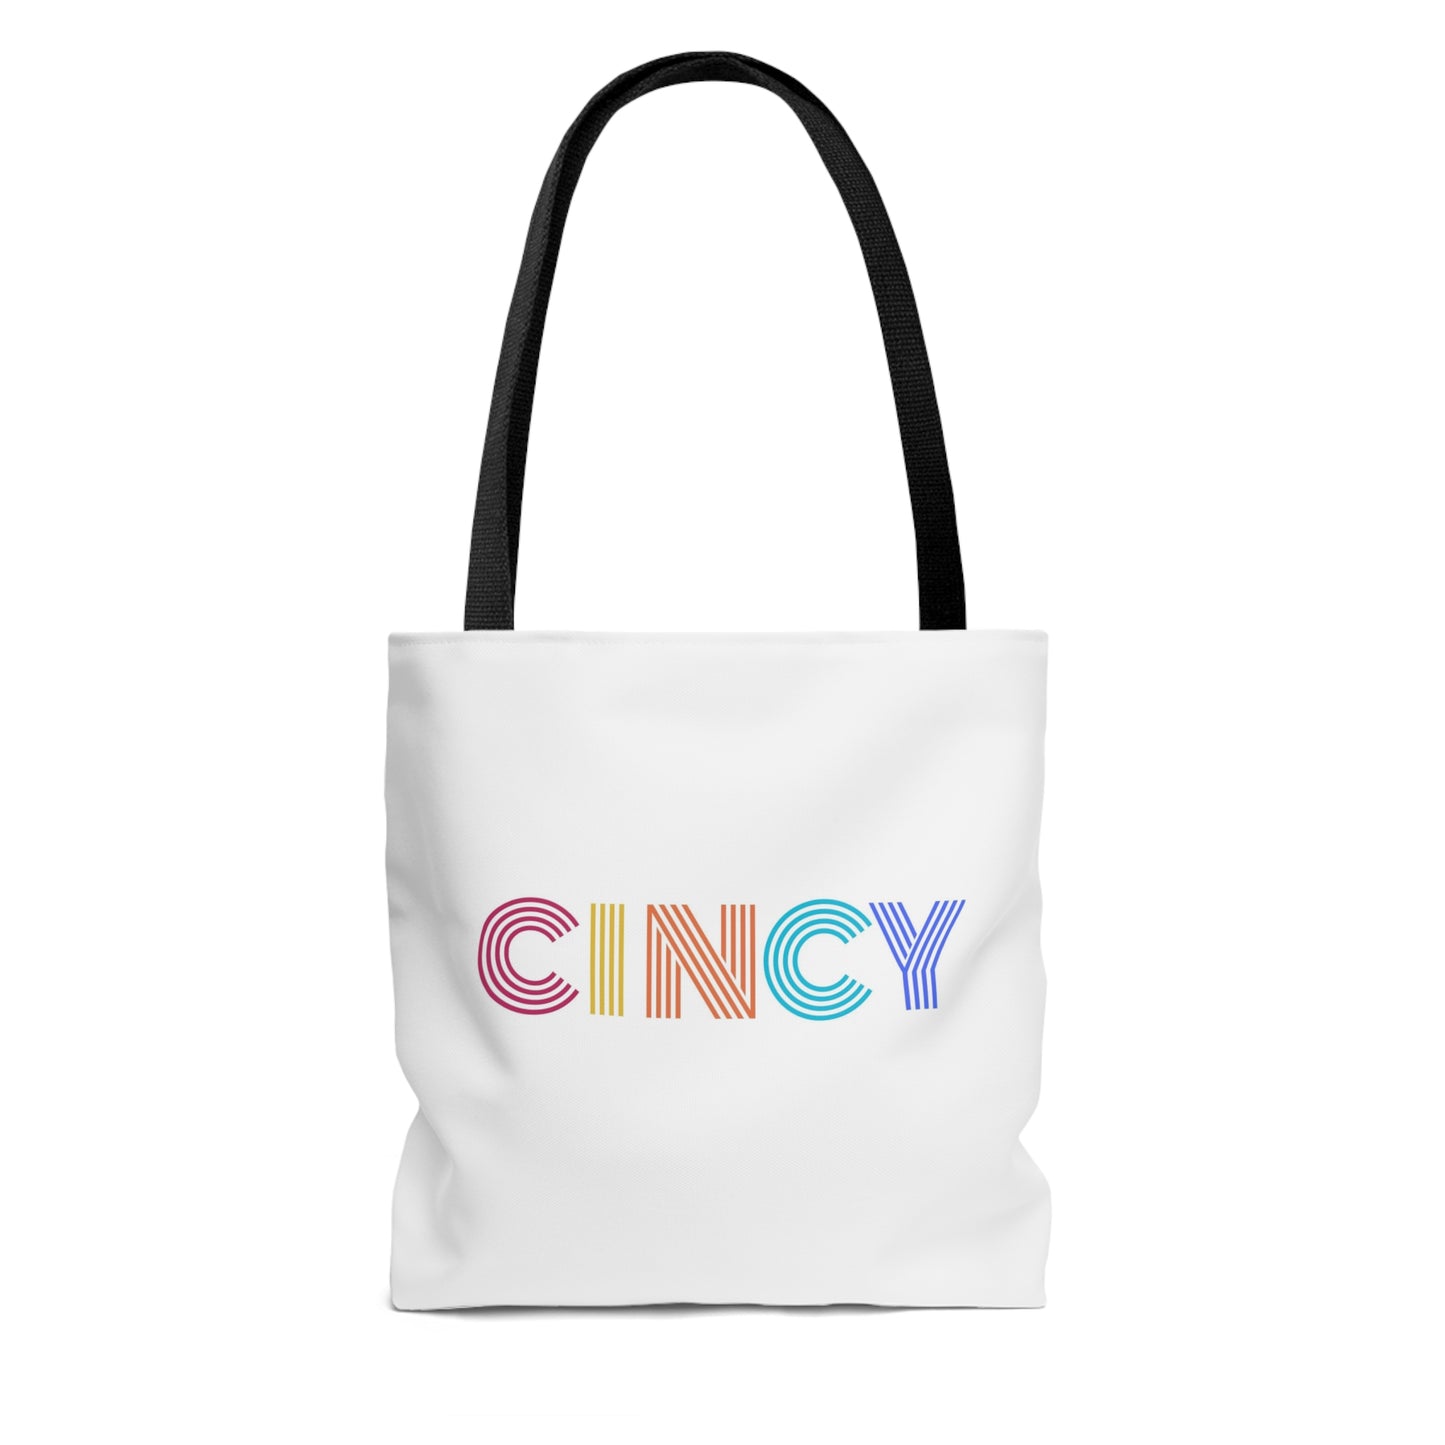 CINCY Tote Bag